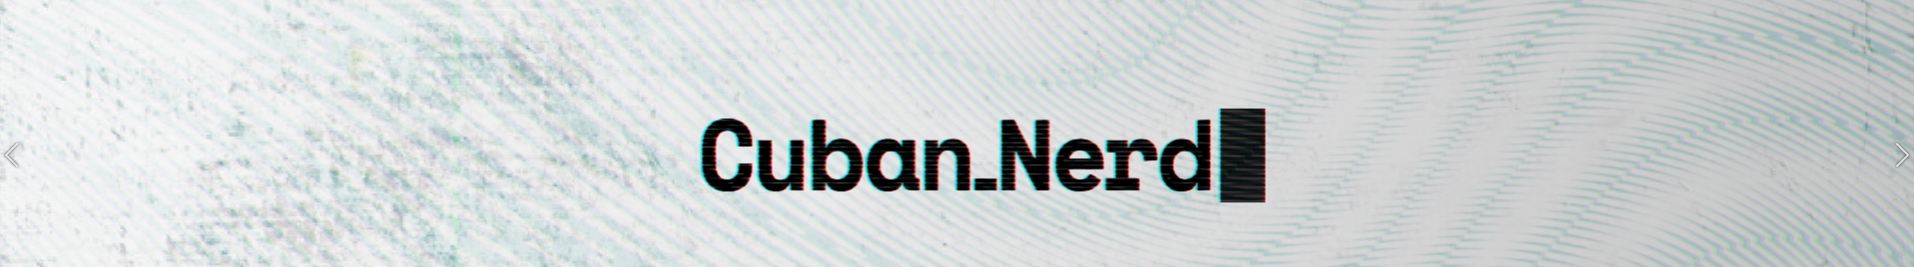 Cuban Nerd profil başlığı